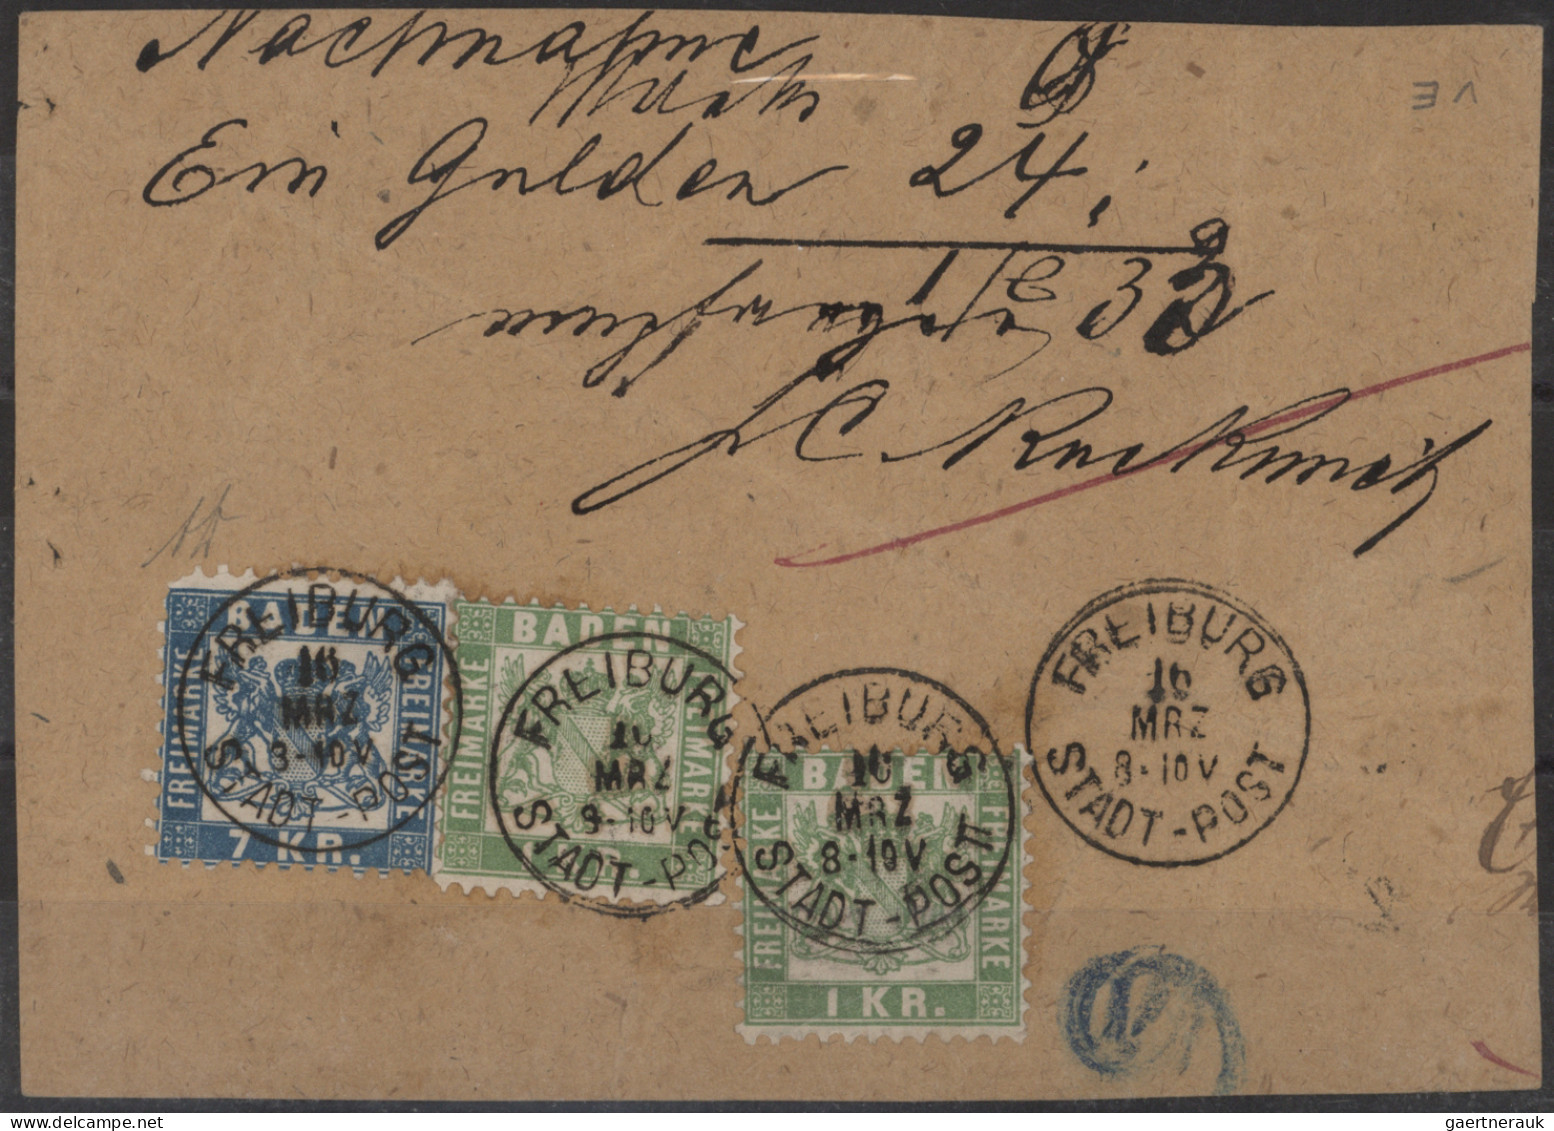 Baden - Marken und Briefe: 1852/1870 (ca.), Umfangreiche Sammlung von hunderten